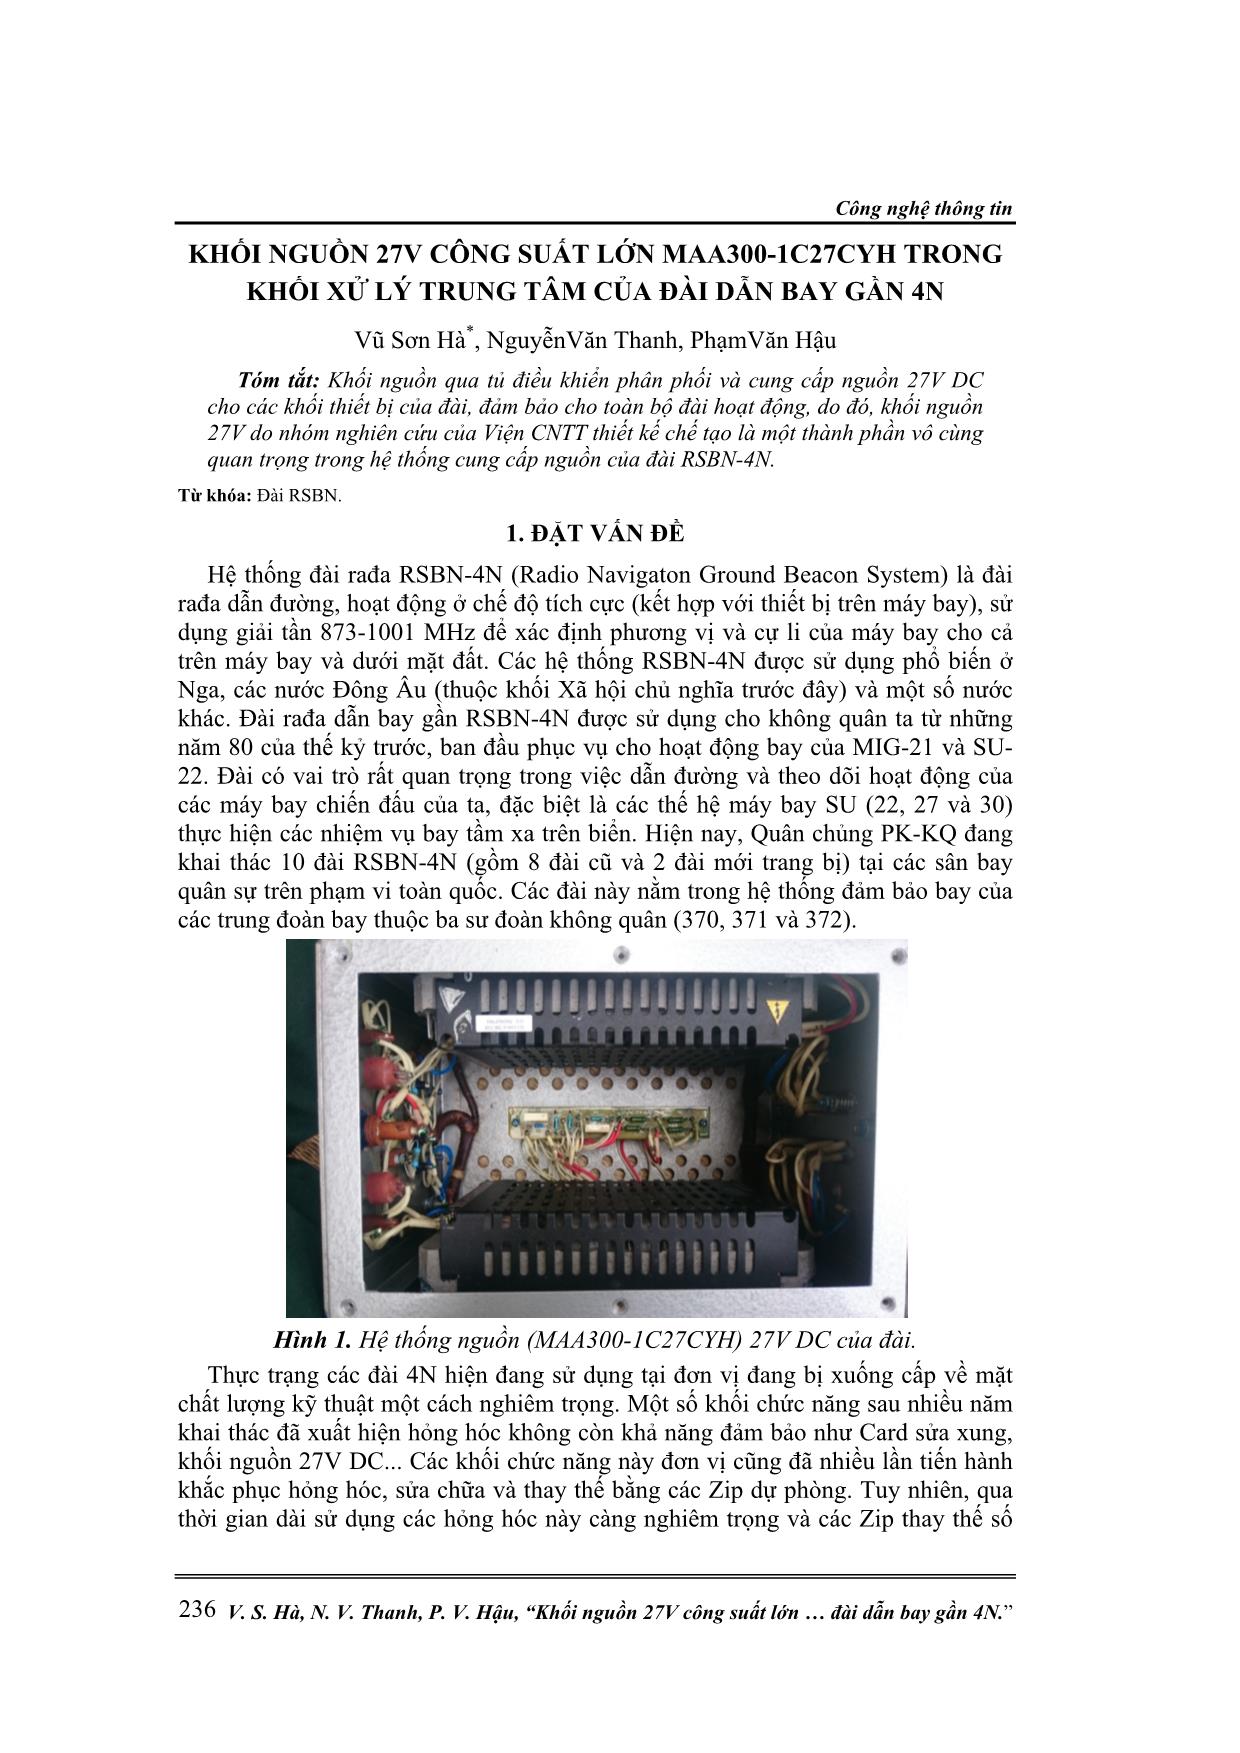 Khối nguồn 27V công suất lớn MAA300-1C27CYH trong khối xử lý trung tâm của đài dẫn bay gần 4N trang 1